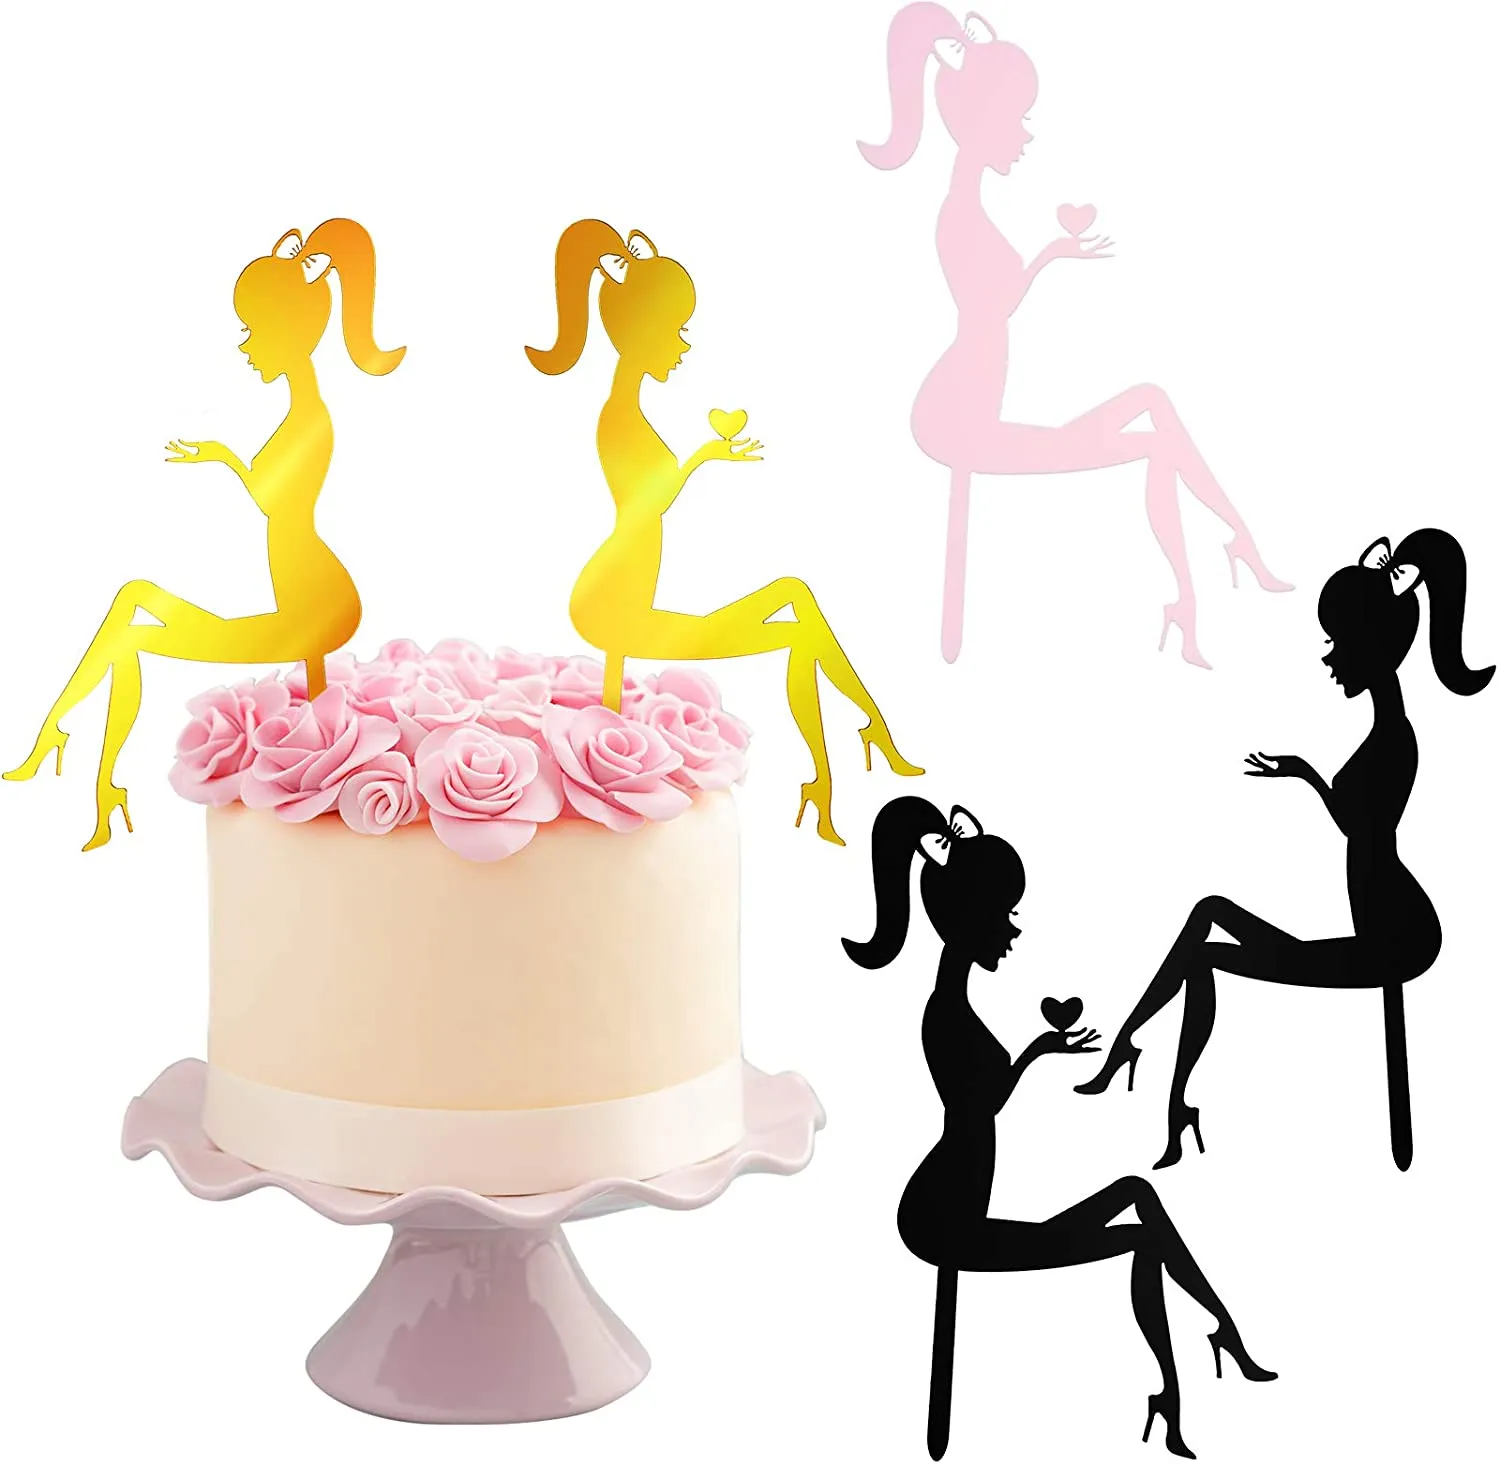 Akrylowe kobiety figurki topperowe wysokie obcasy dama kształt ciasta dekoracja elegancka dziewczyna toppery brokatowy deser na wesele przyjęcie urodzinowe rocznica 1222284